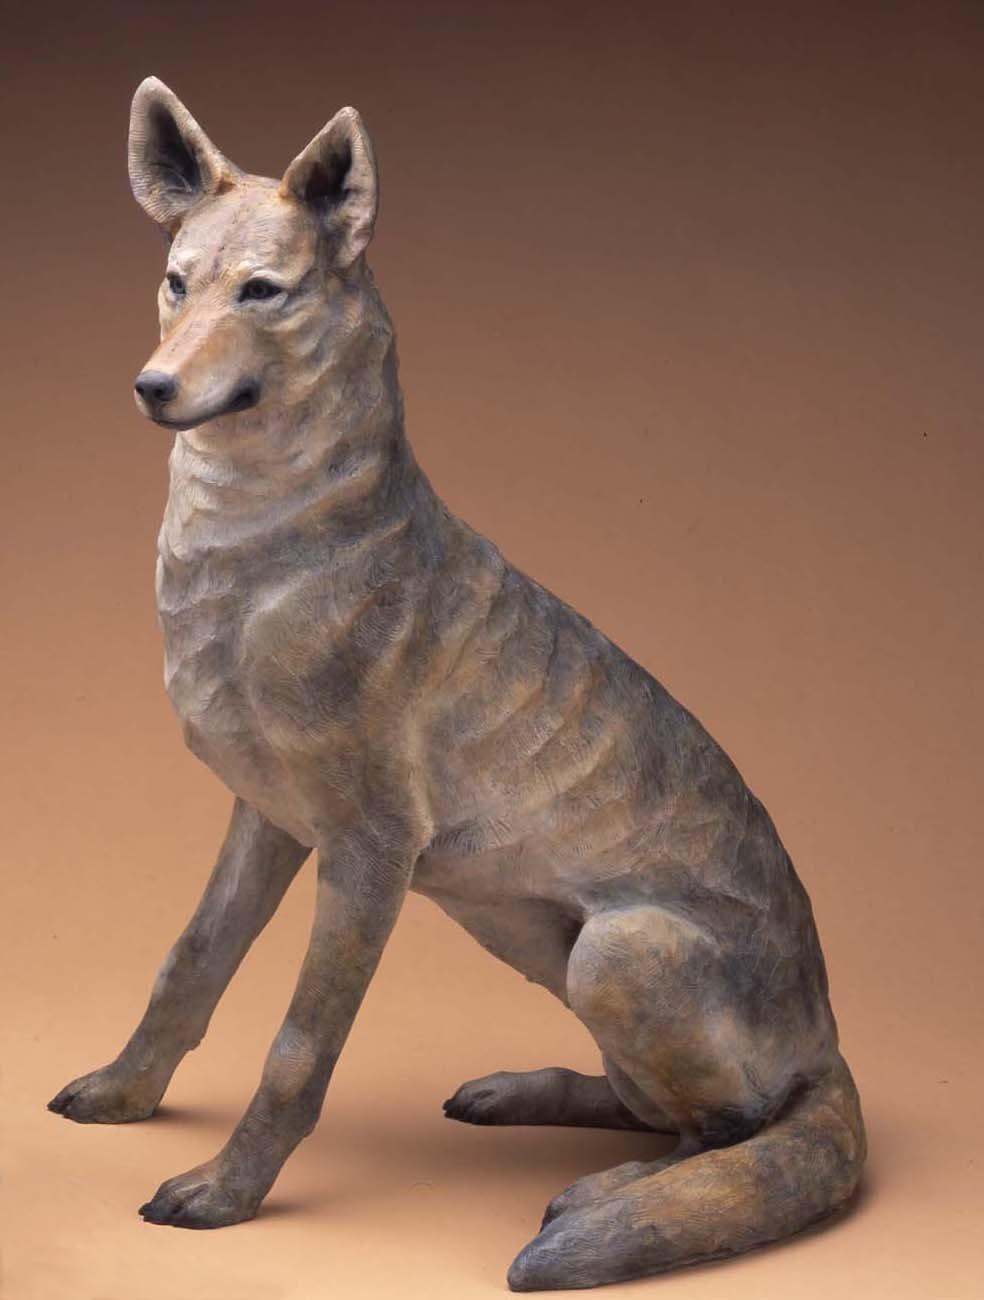 Star Liana York-Coyote III-Sorrel Sky Gallery-Sculpture